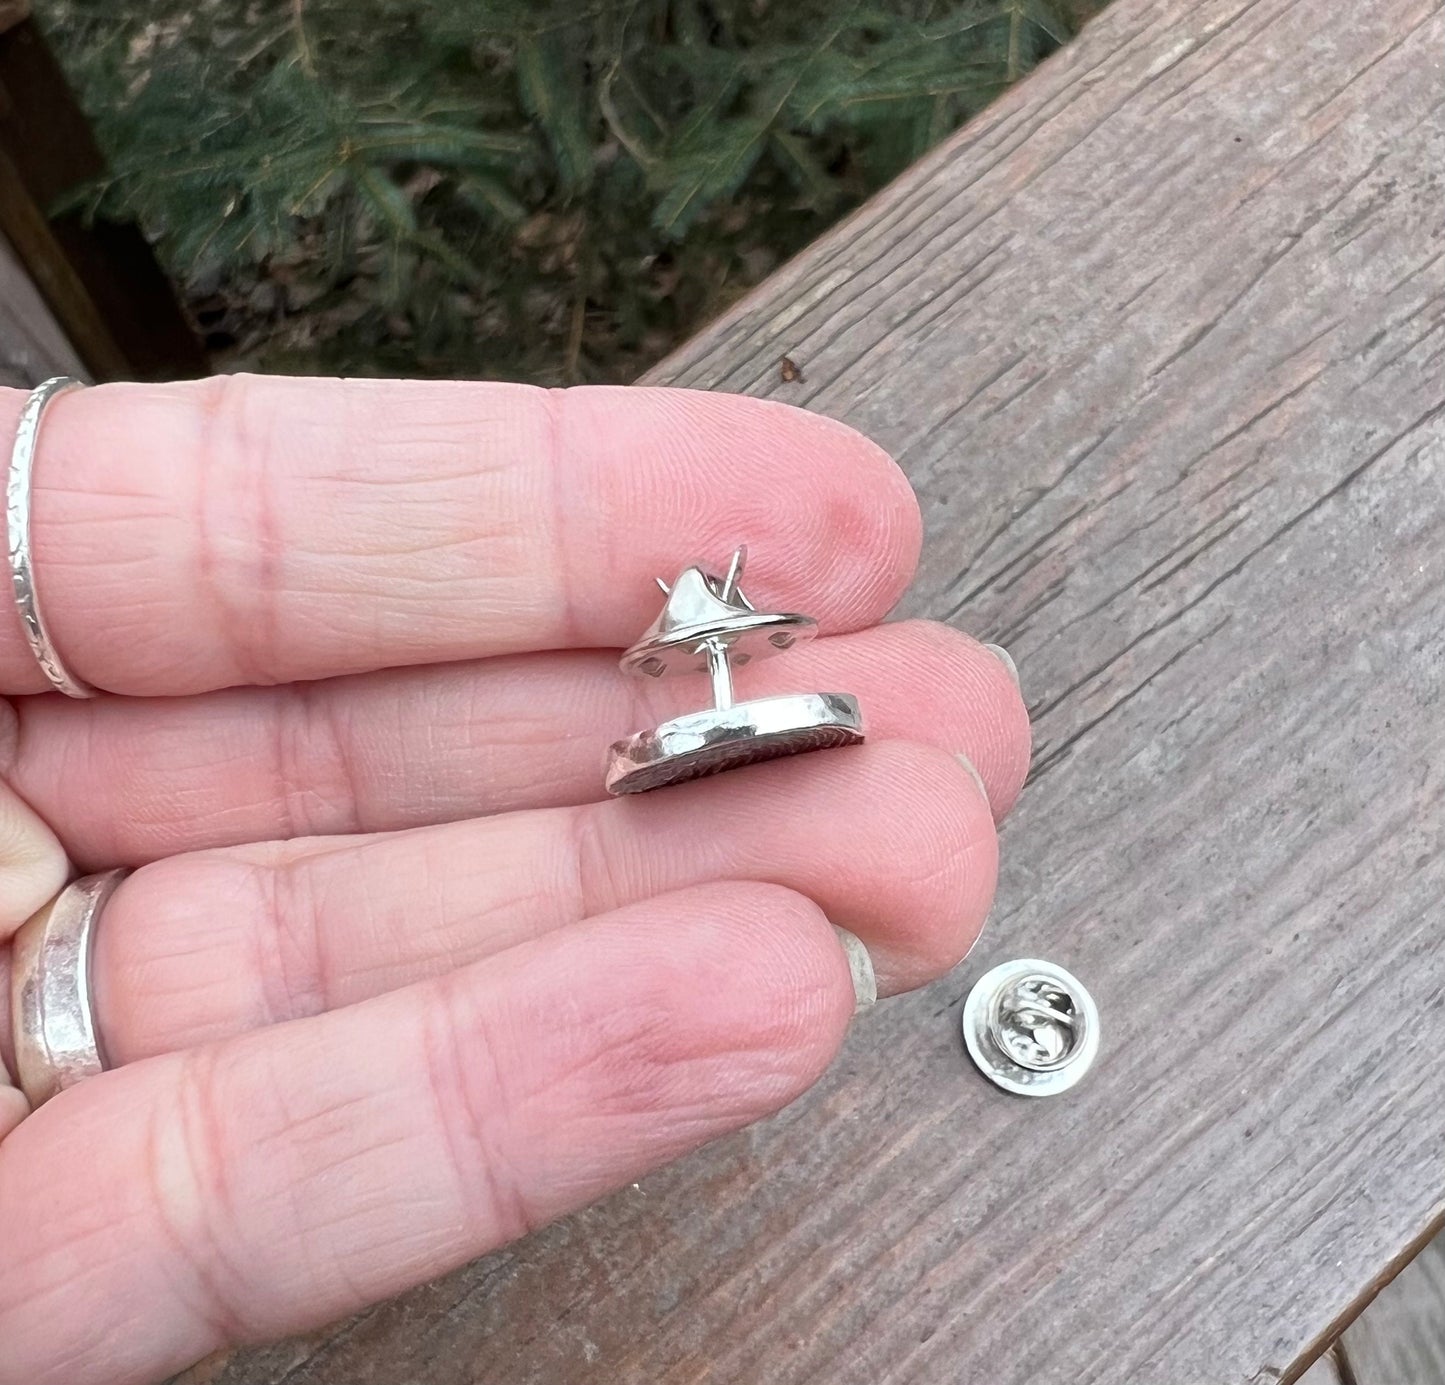 Fingerprint Lapel Pin in Sterling Silver